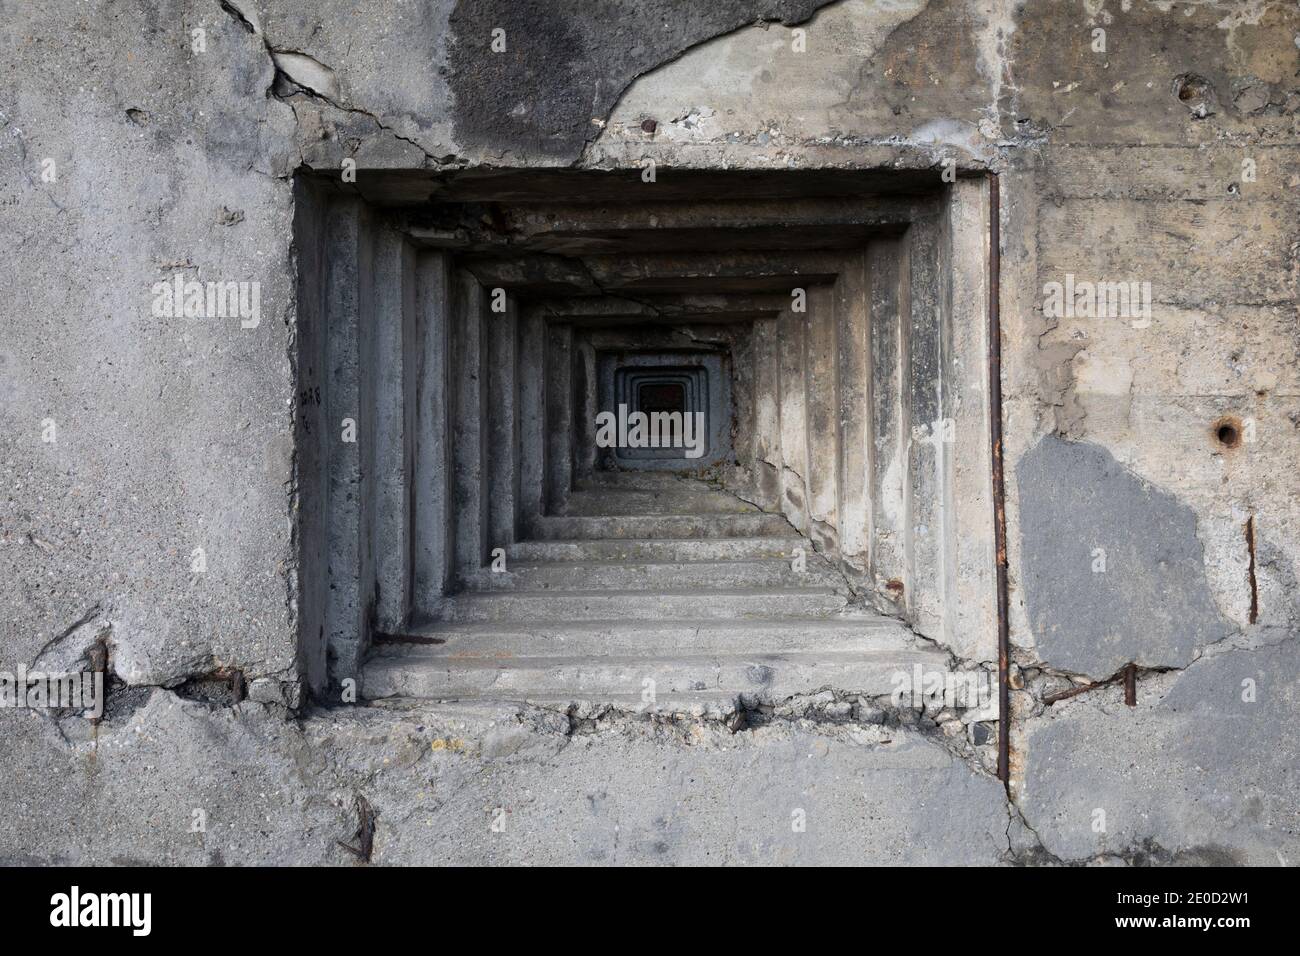 Dettaglio bunker militare e pillbox - abbraccio steppen e foro per pistola nella parete grigia in cemento. Foto Stock